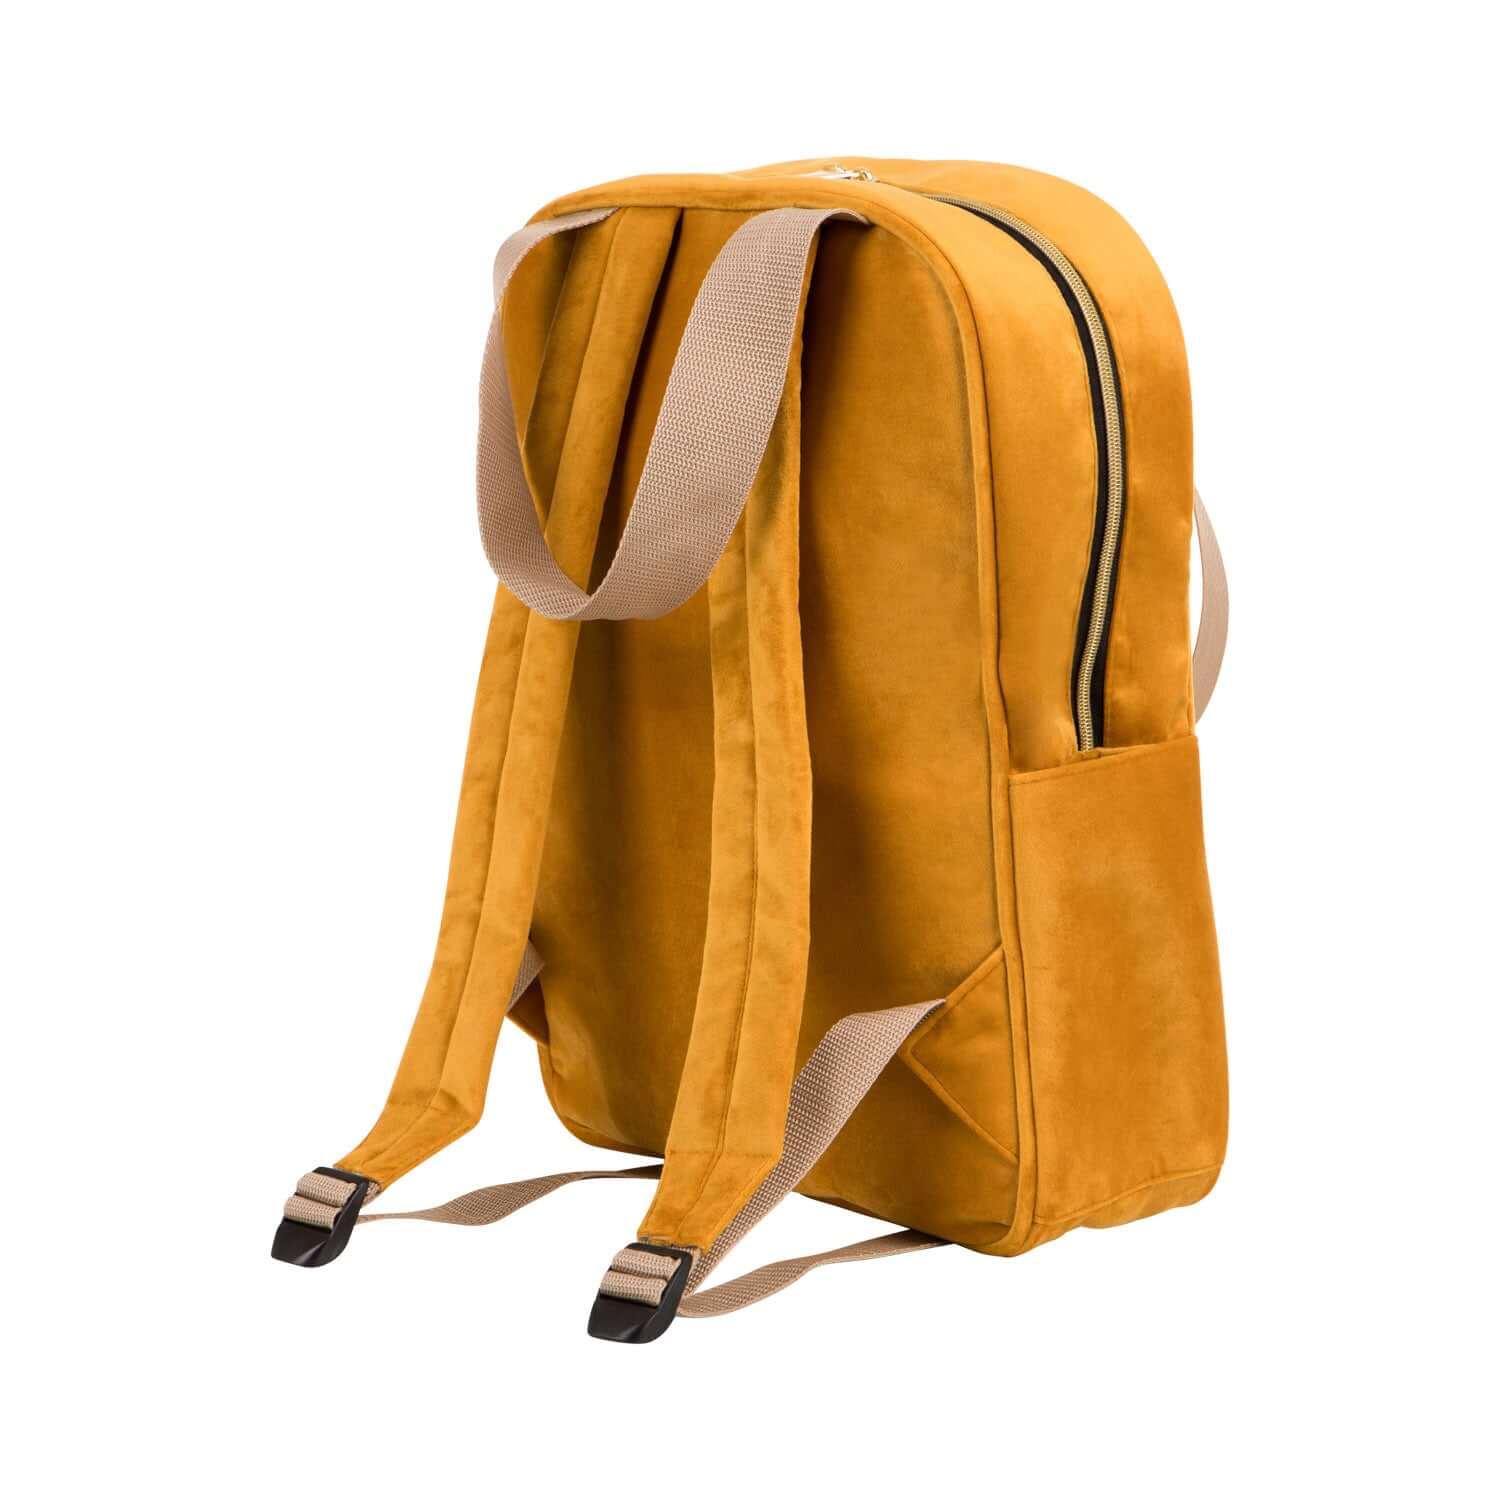 velvet yellow backpack bettys home small backpack for kindergarten 